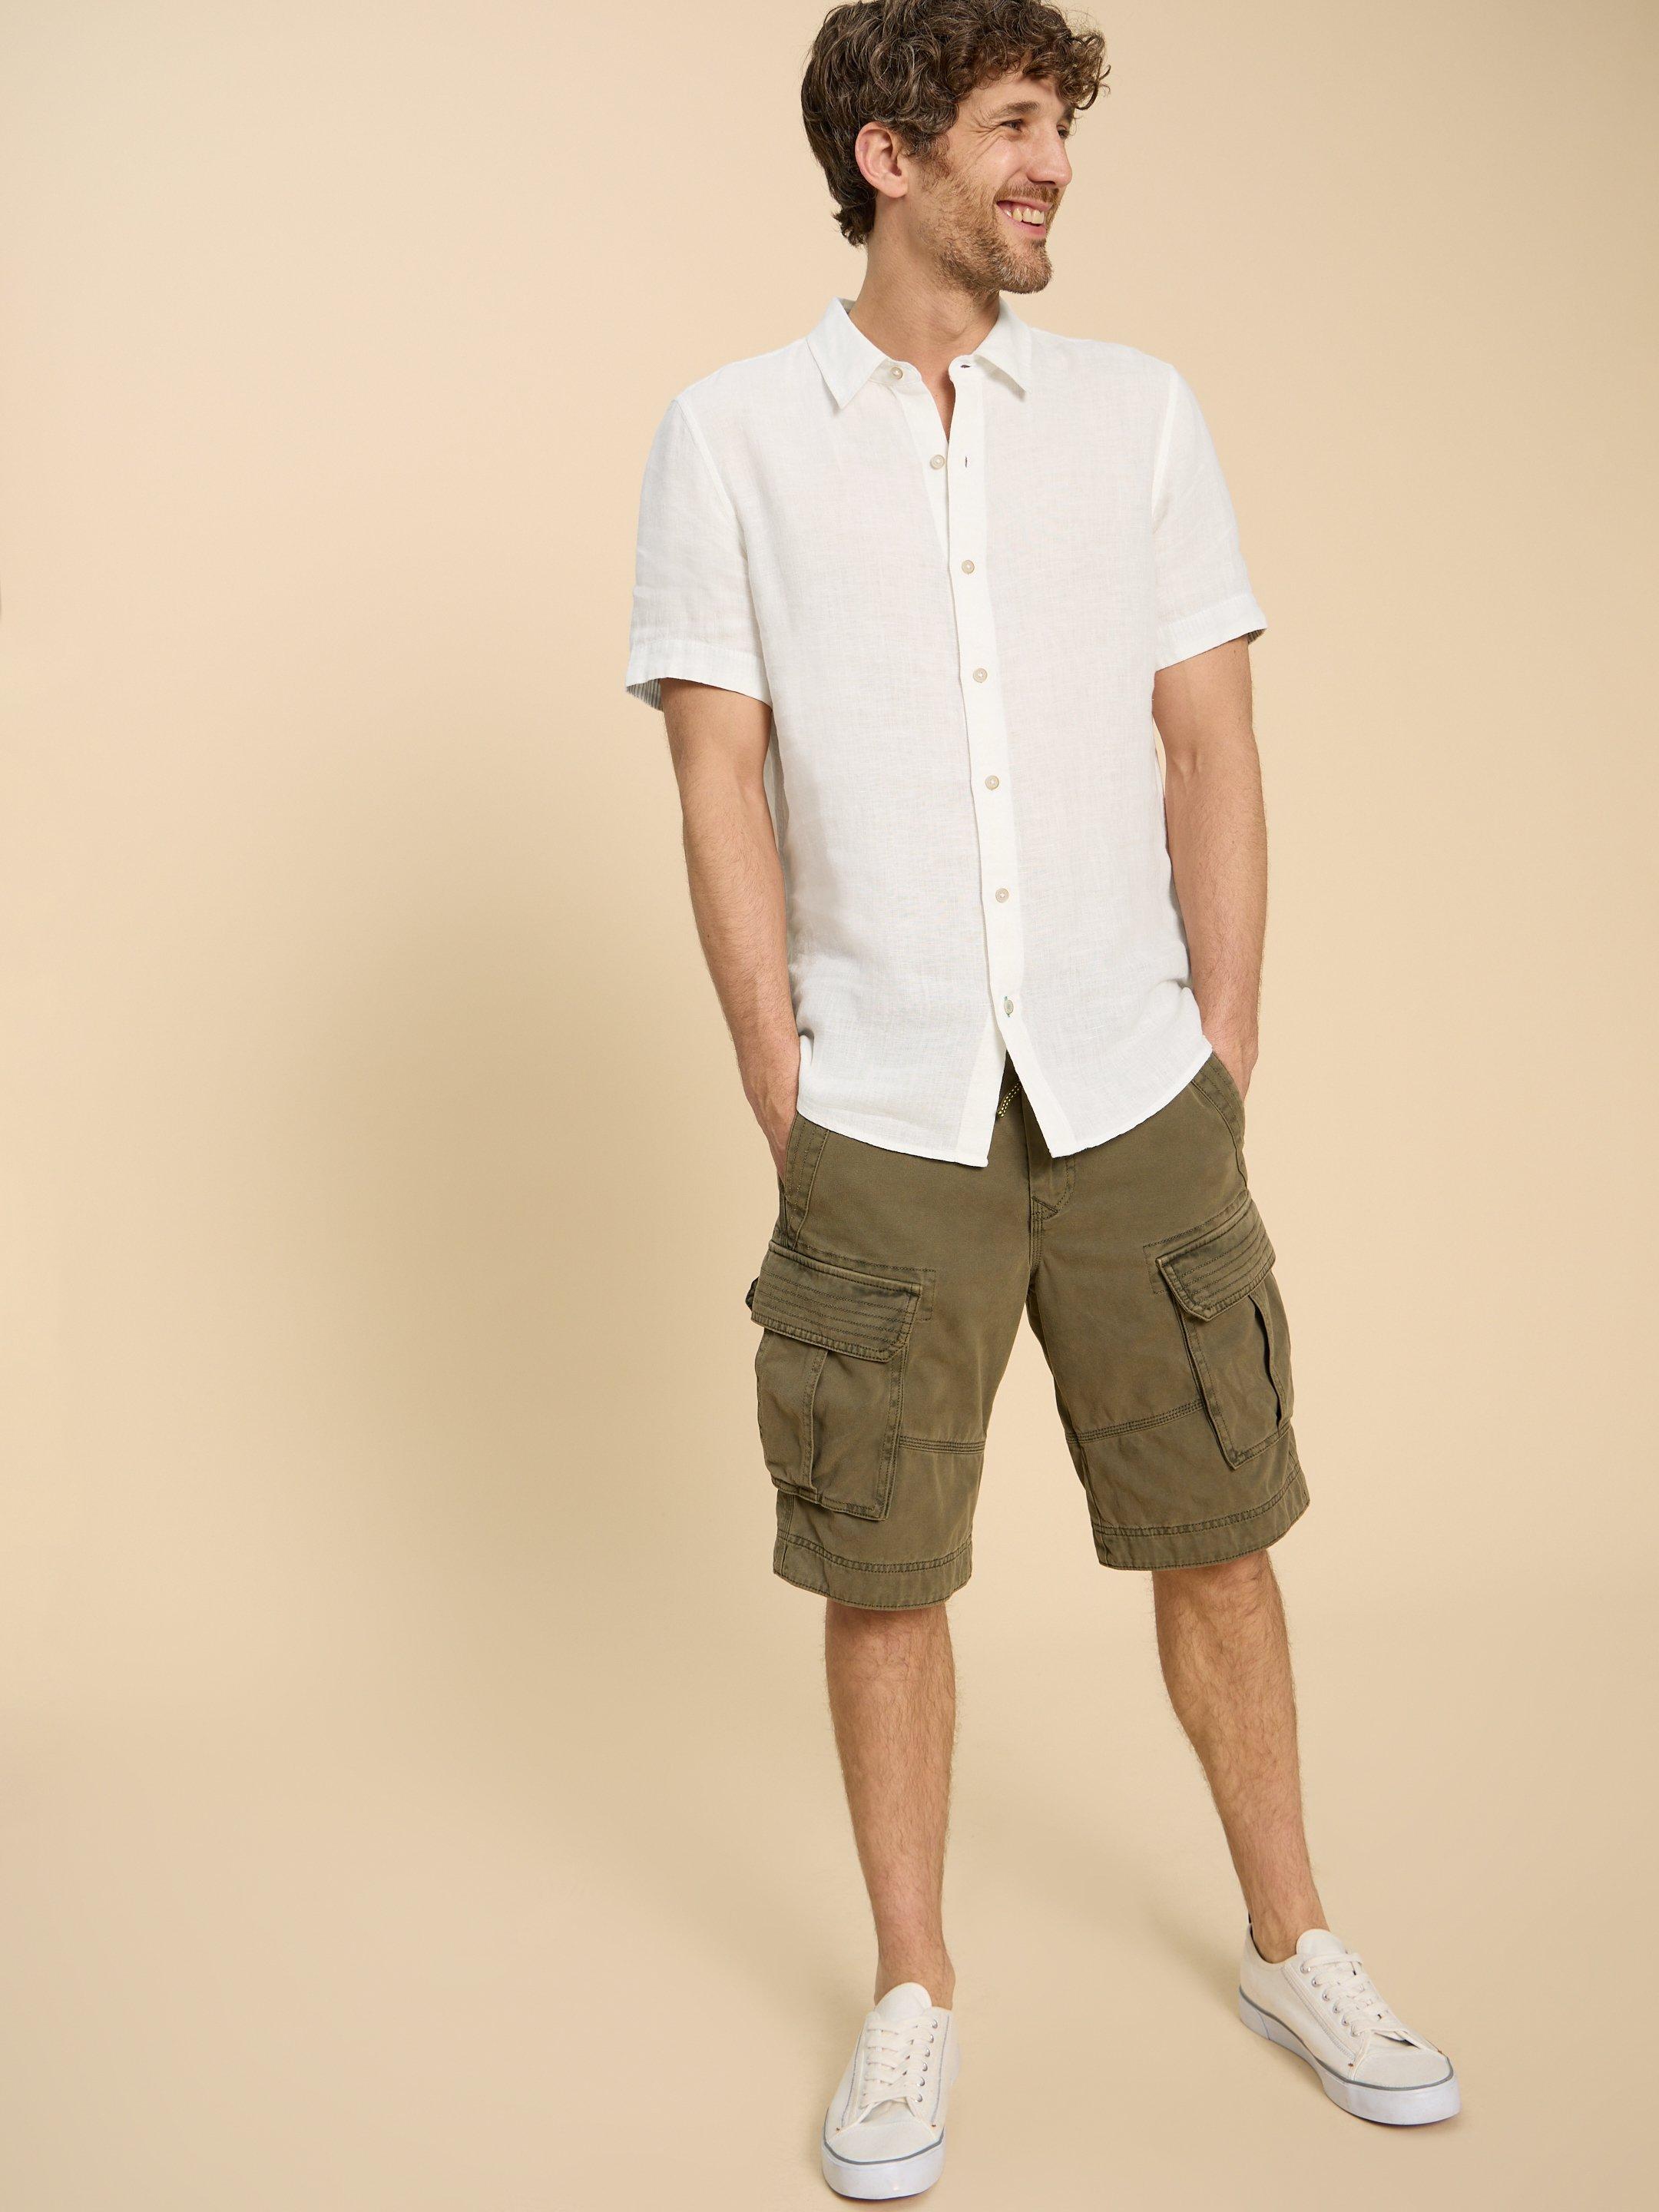 Men's Linen Shirts, Short & Long Sleeve Linen Shirts, White Stuff